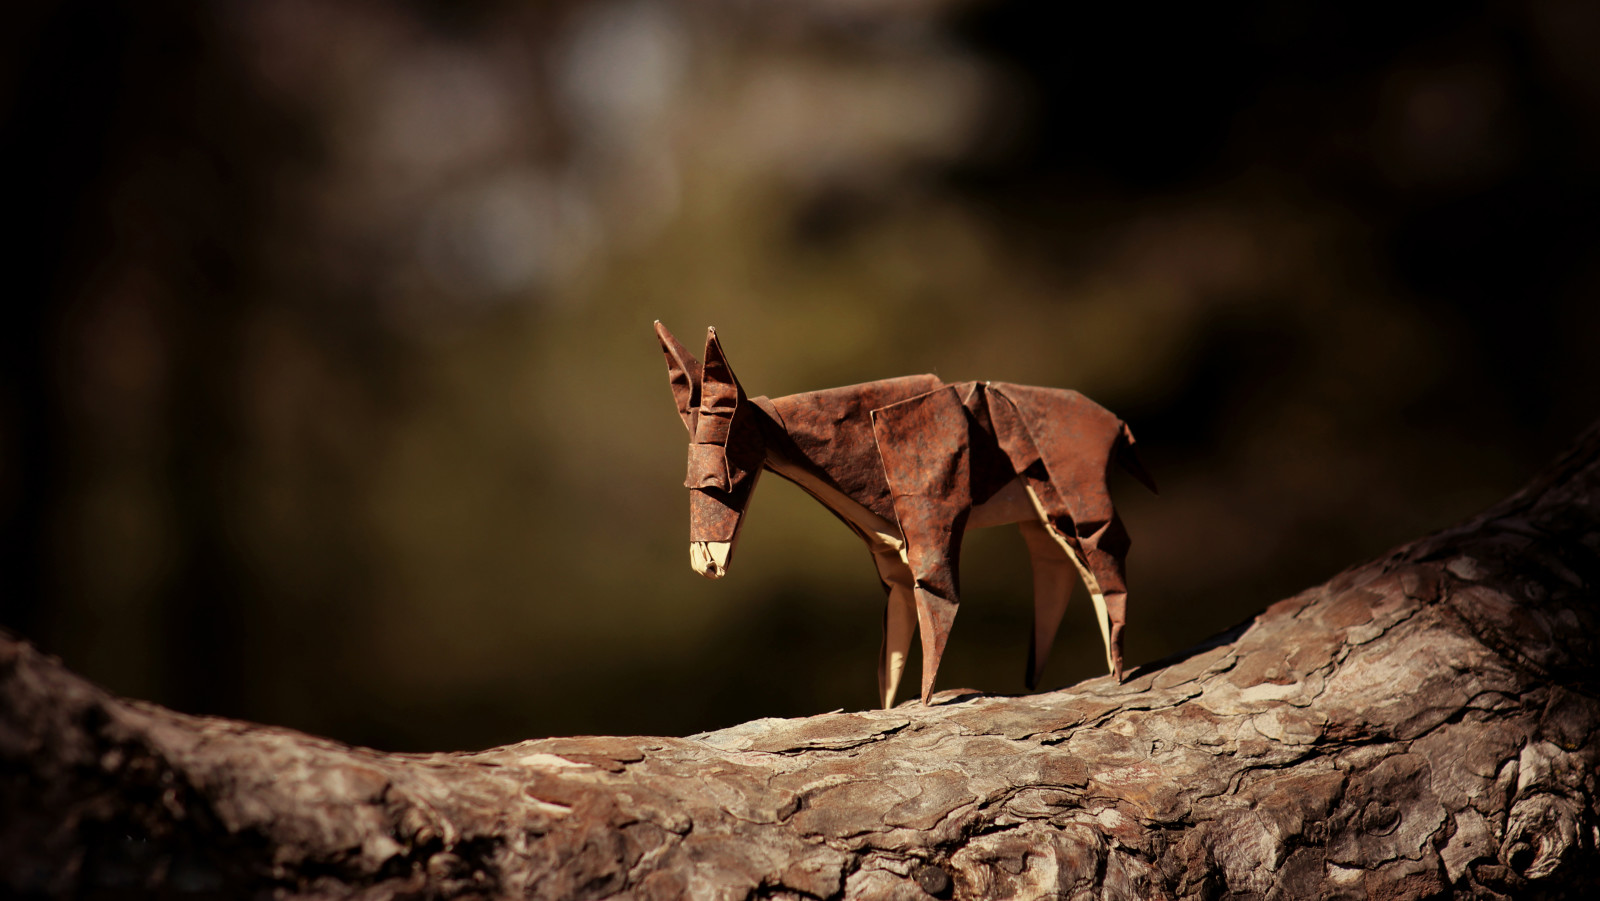 cokelat, cabang, origami, keledai, keledai perjalanan, keledai coklat